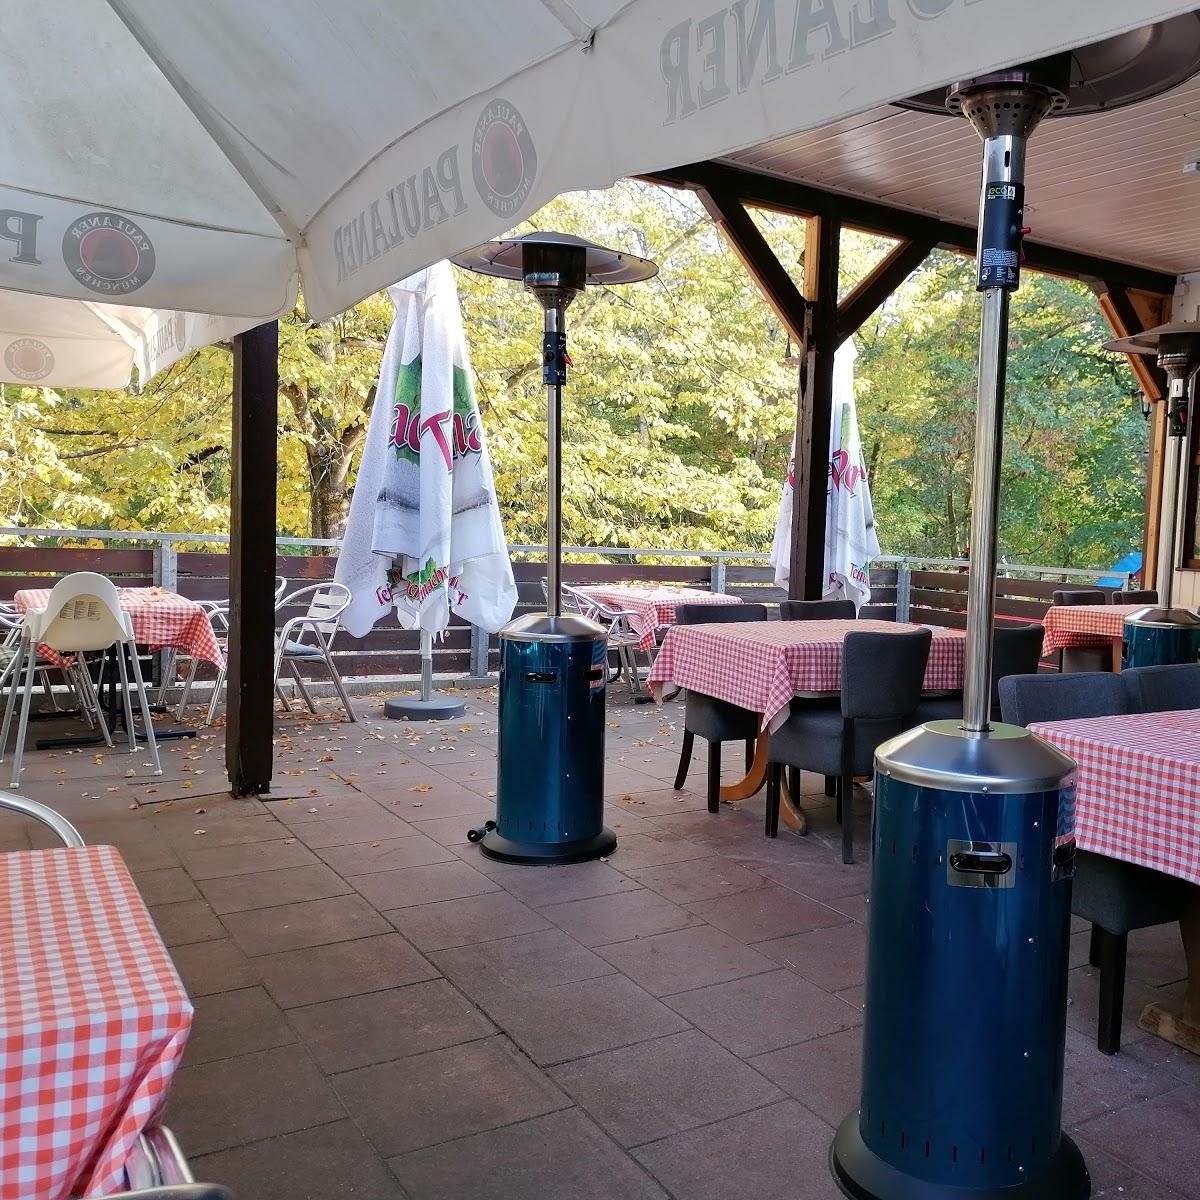 Restaurant "Restaurant Pagoni im Vogelpark" in Walldorf